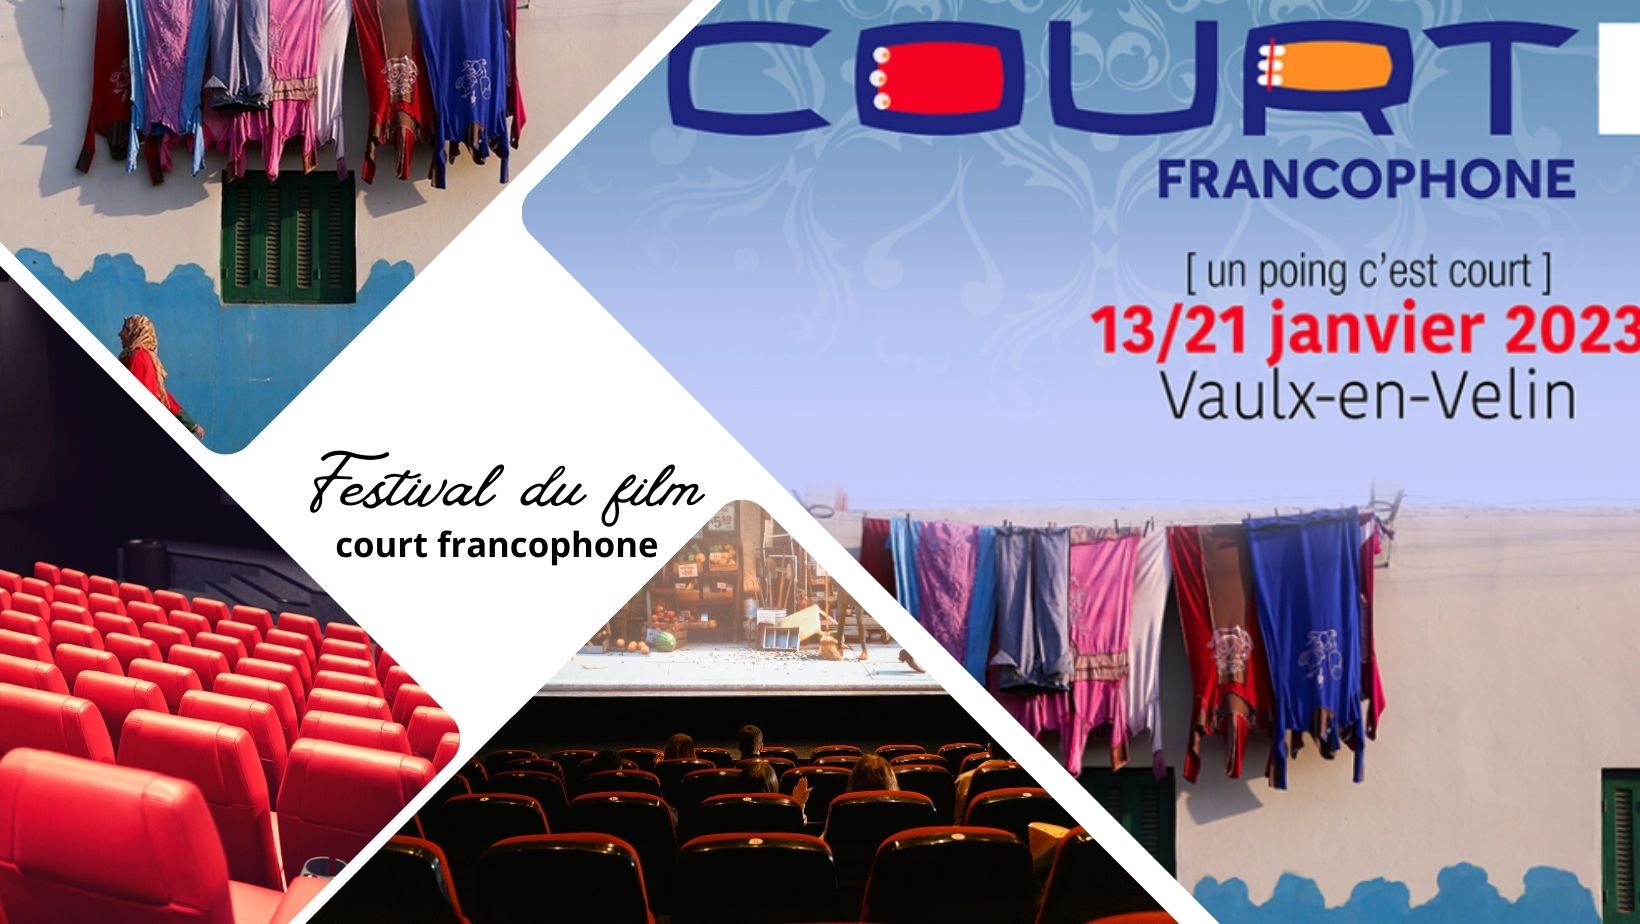 Festival du film court francophone à Vaulx-en-Velin